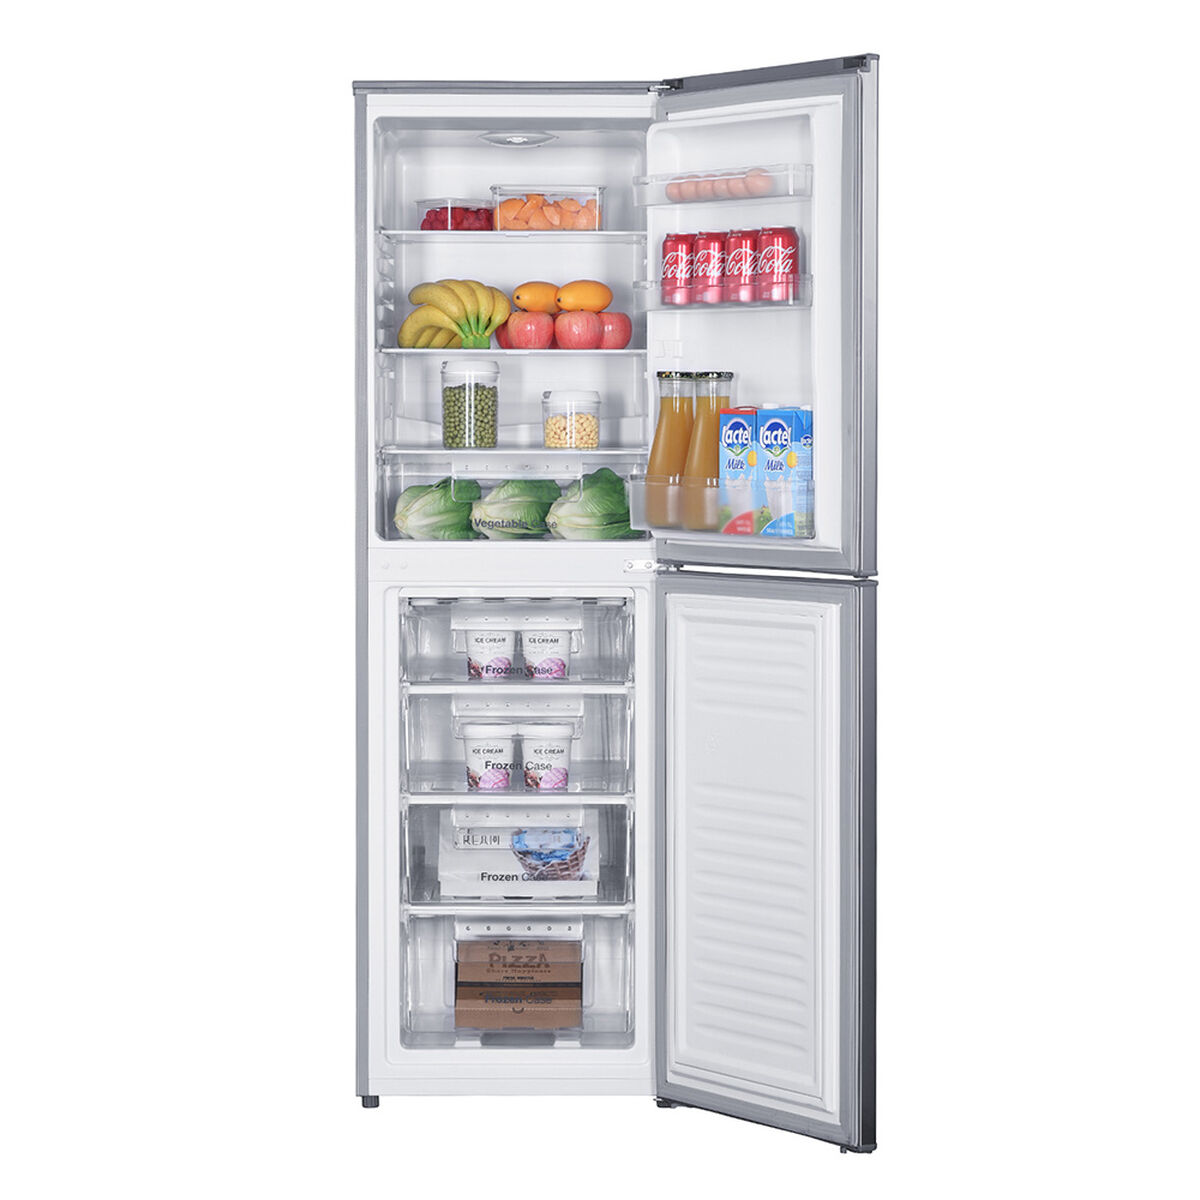 Refrigerador Frío Directo Winia RFD-344H 242 lts